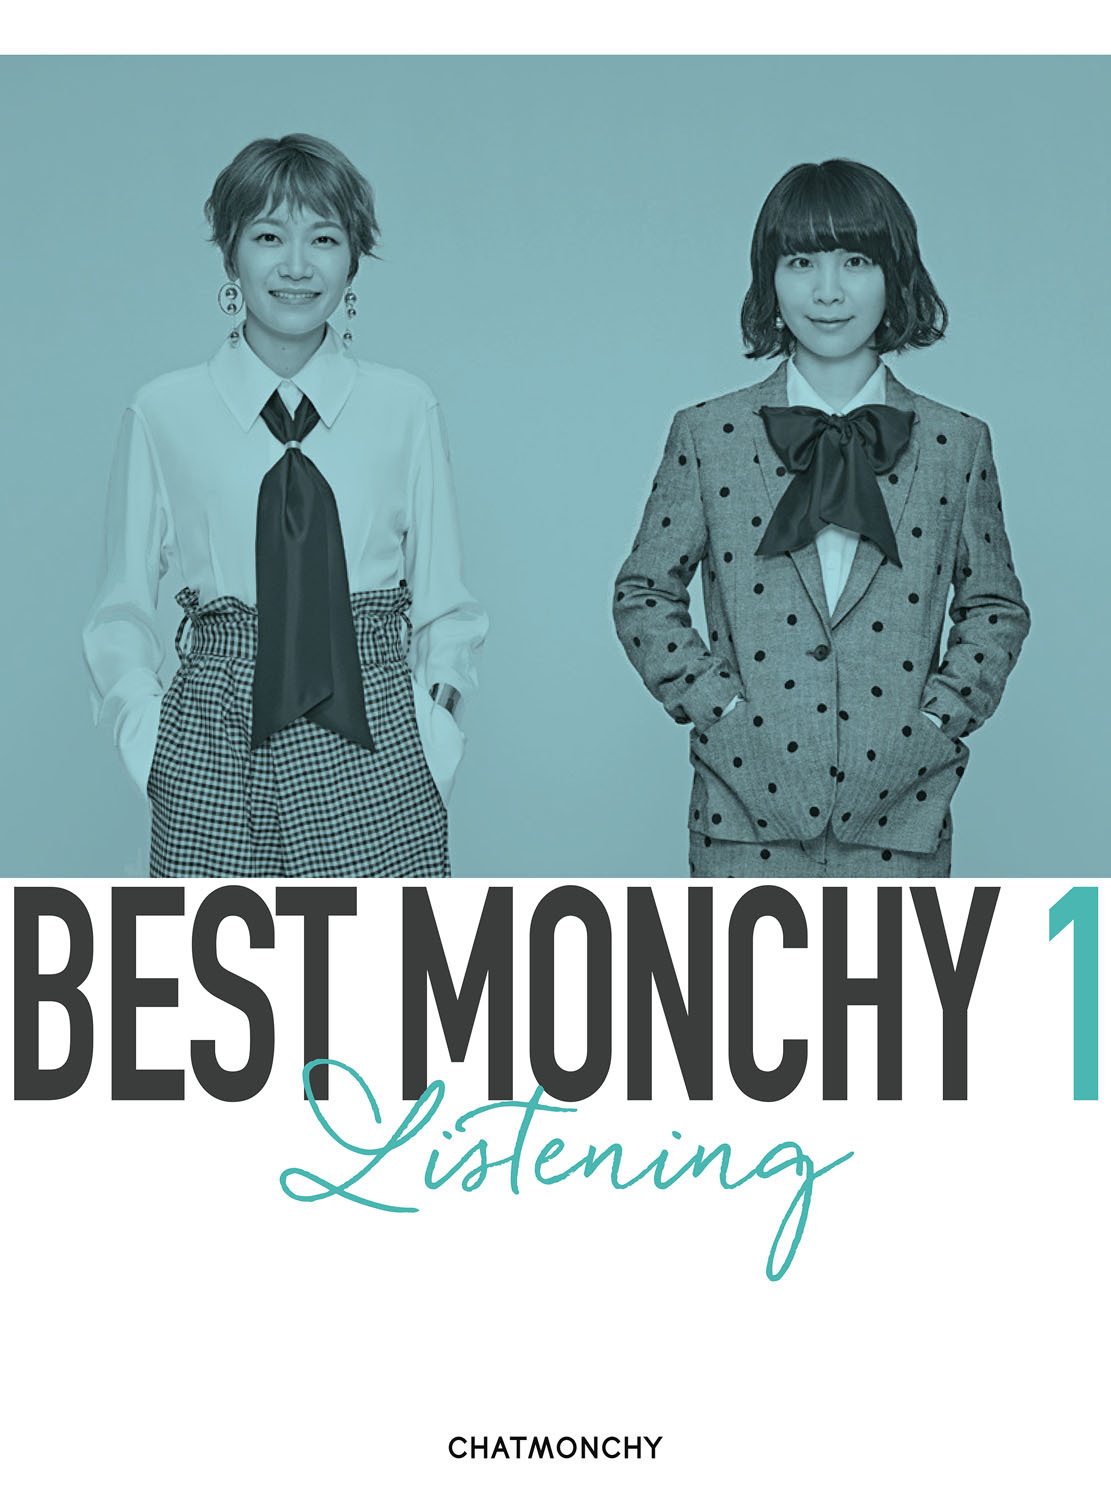 『BEST MONCHY 1 -Listening-』